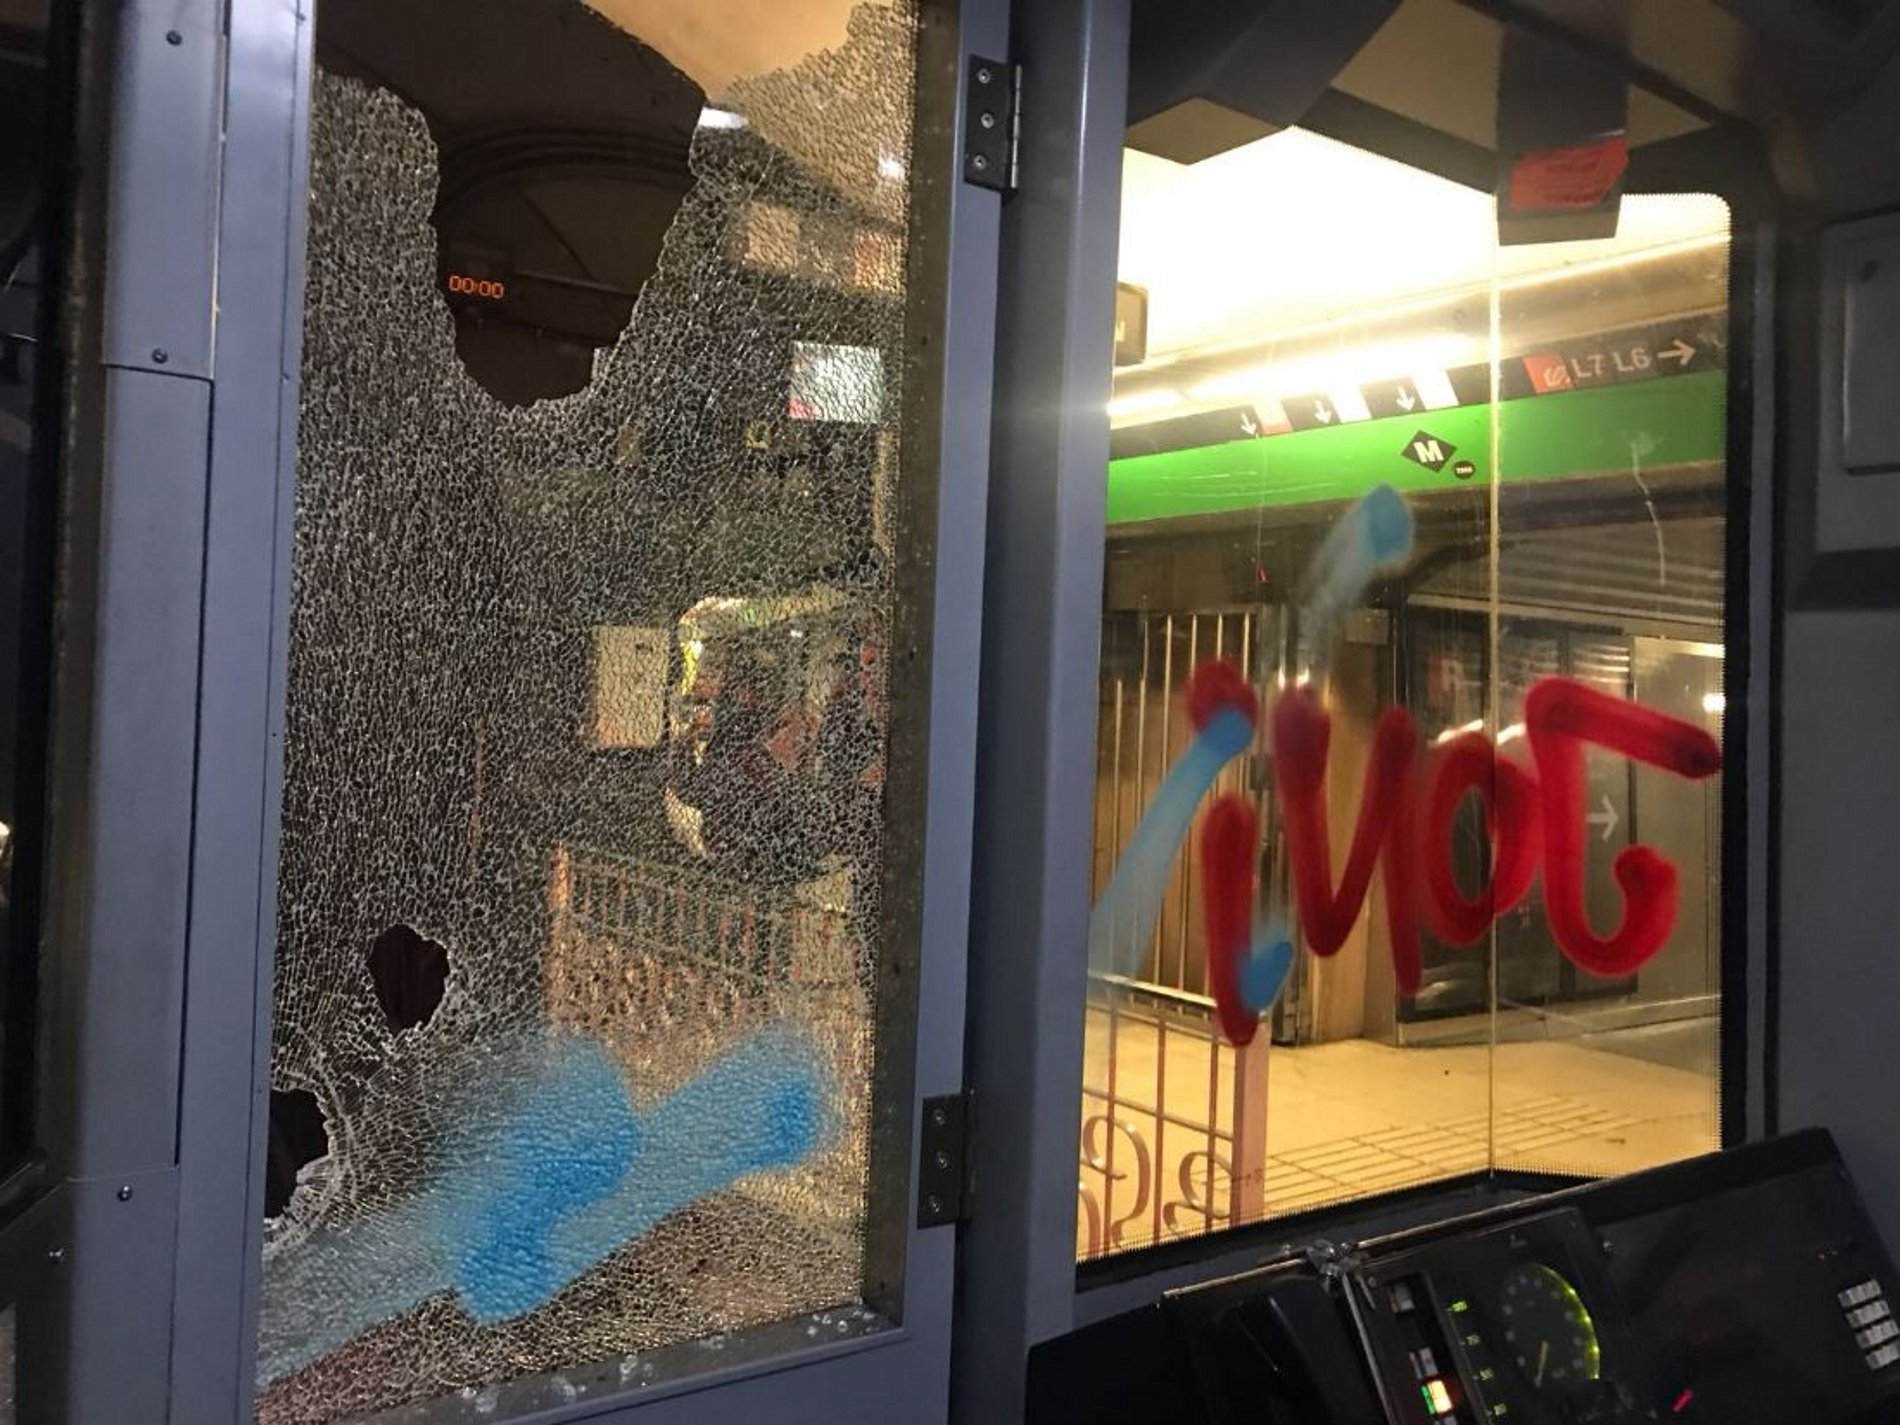 Treballadors del metro denuncien que els grafiters els amenacen amb Taser